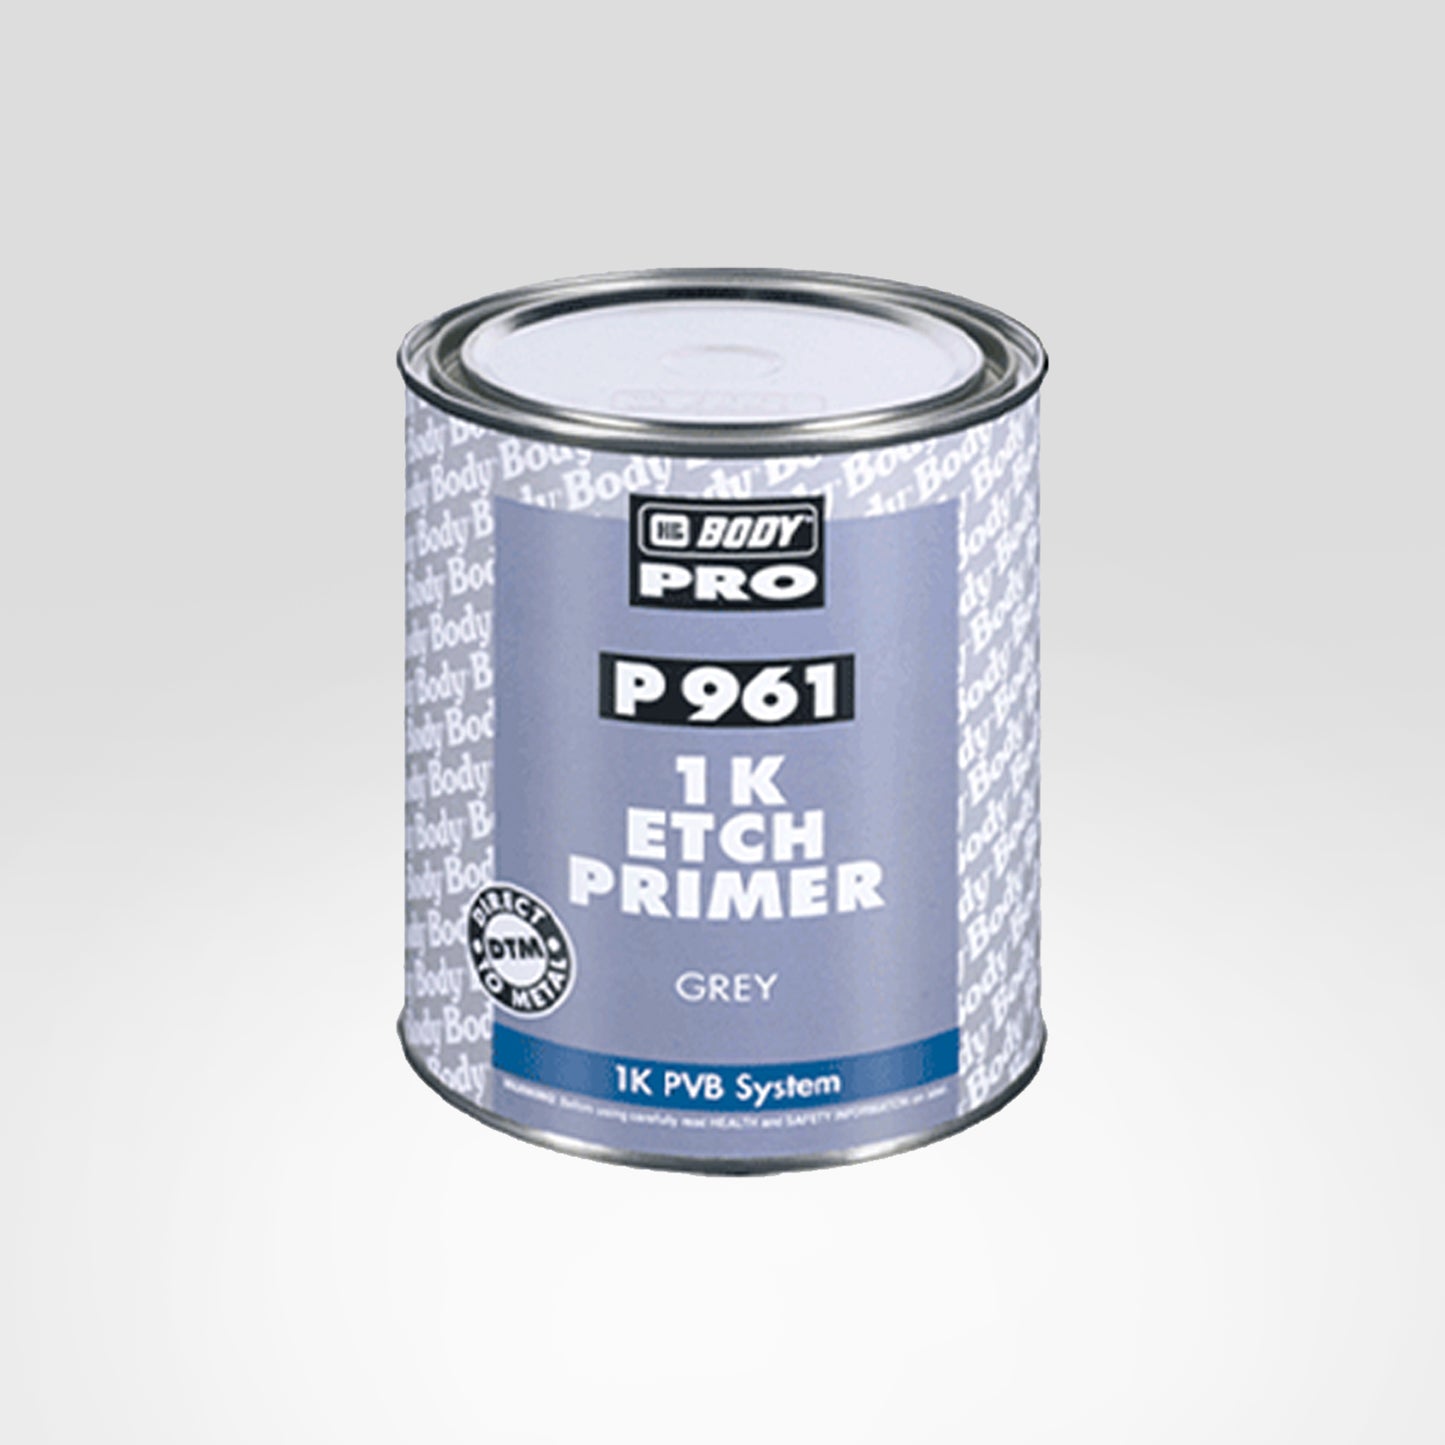 P961 1K Etch Primer Grey 1Lt/Can